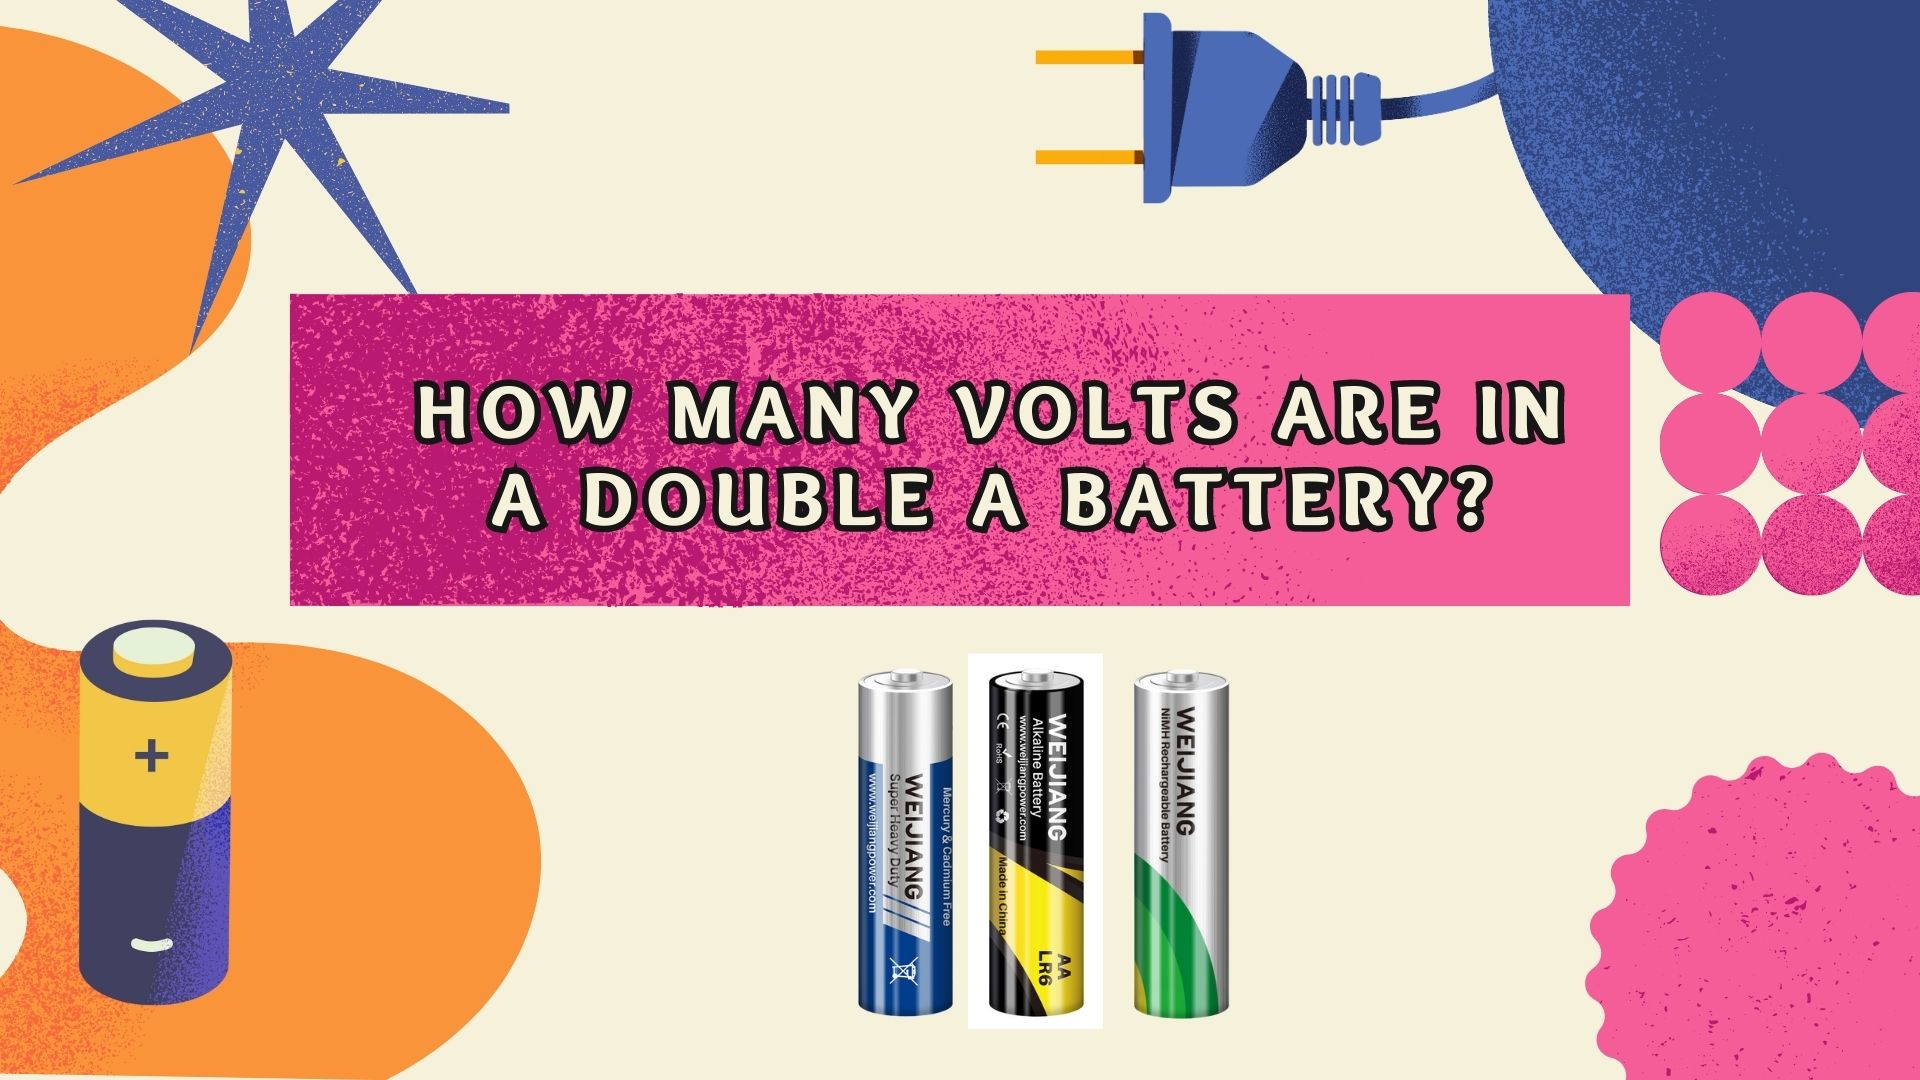 Hoeveel volts is in 'n dubbel 'n battery